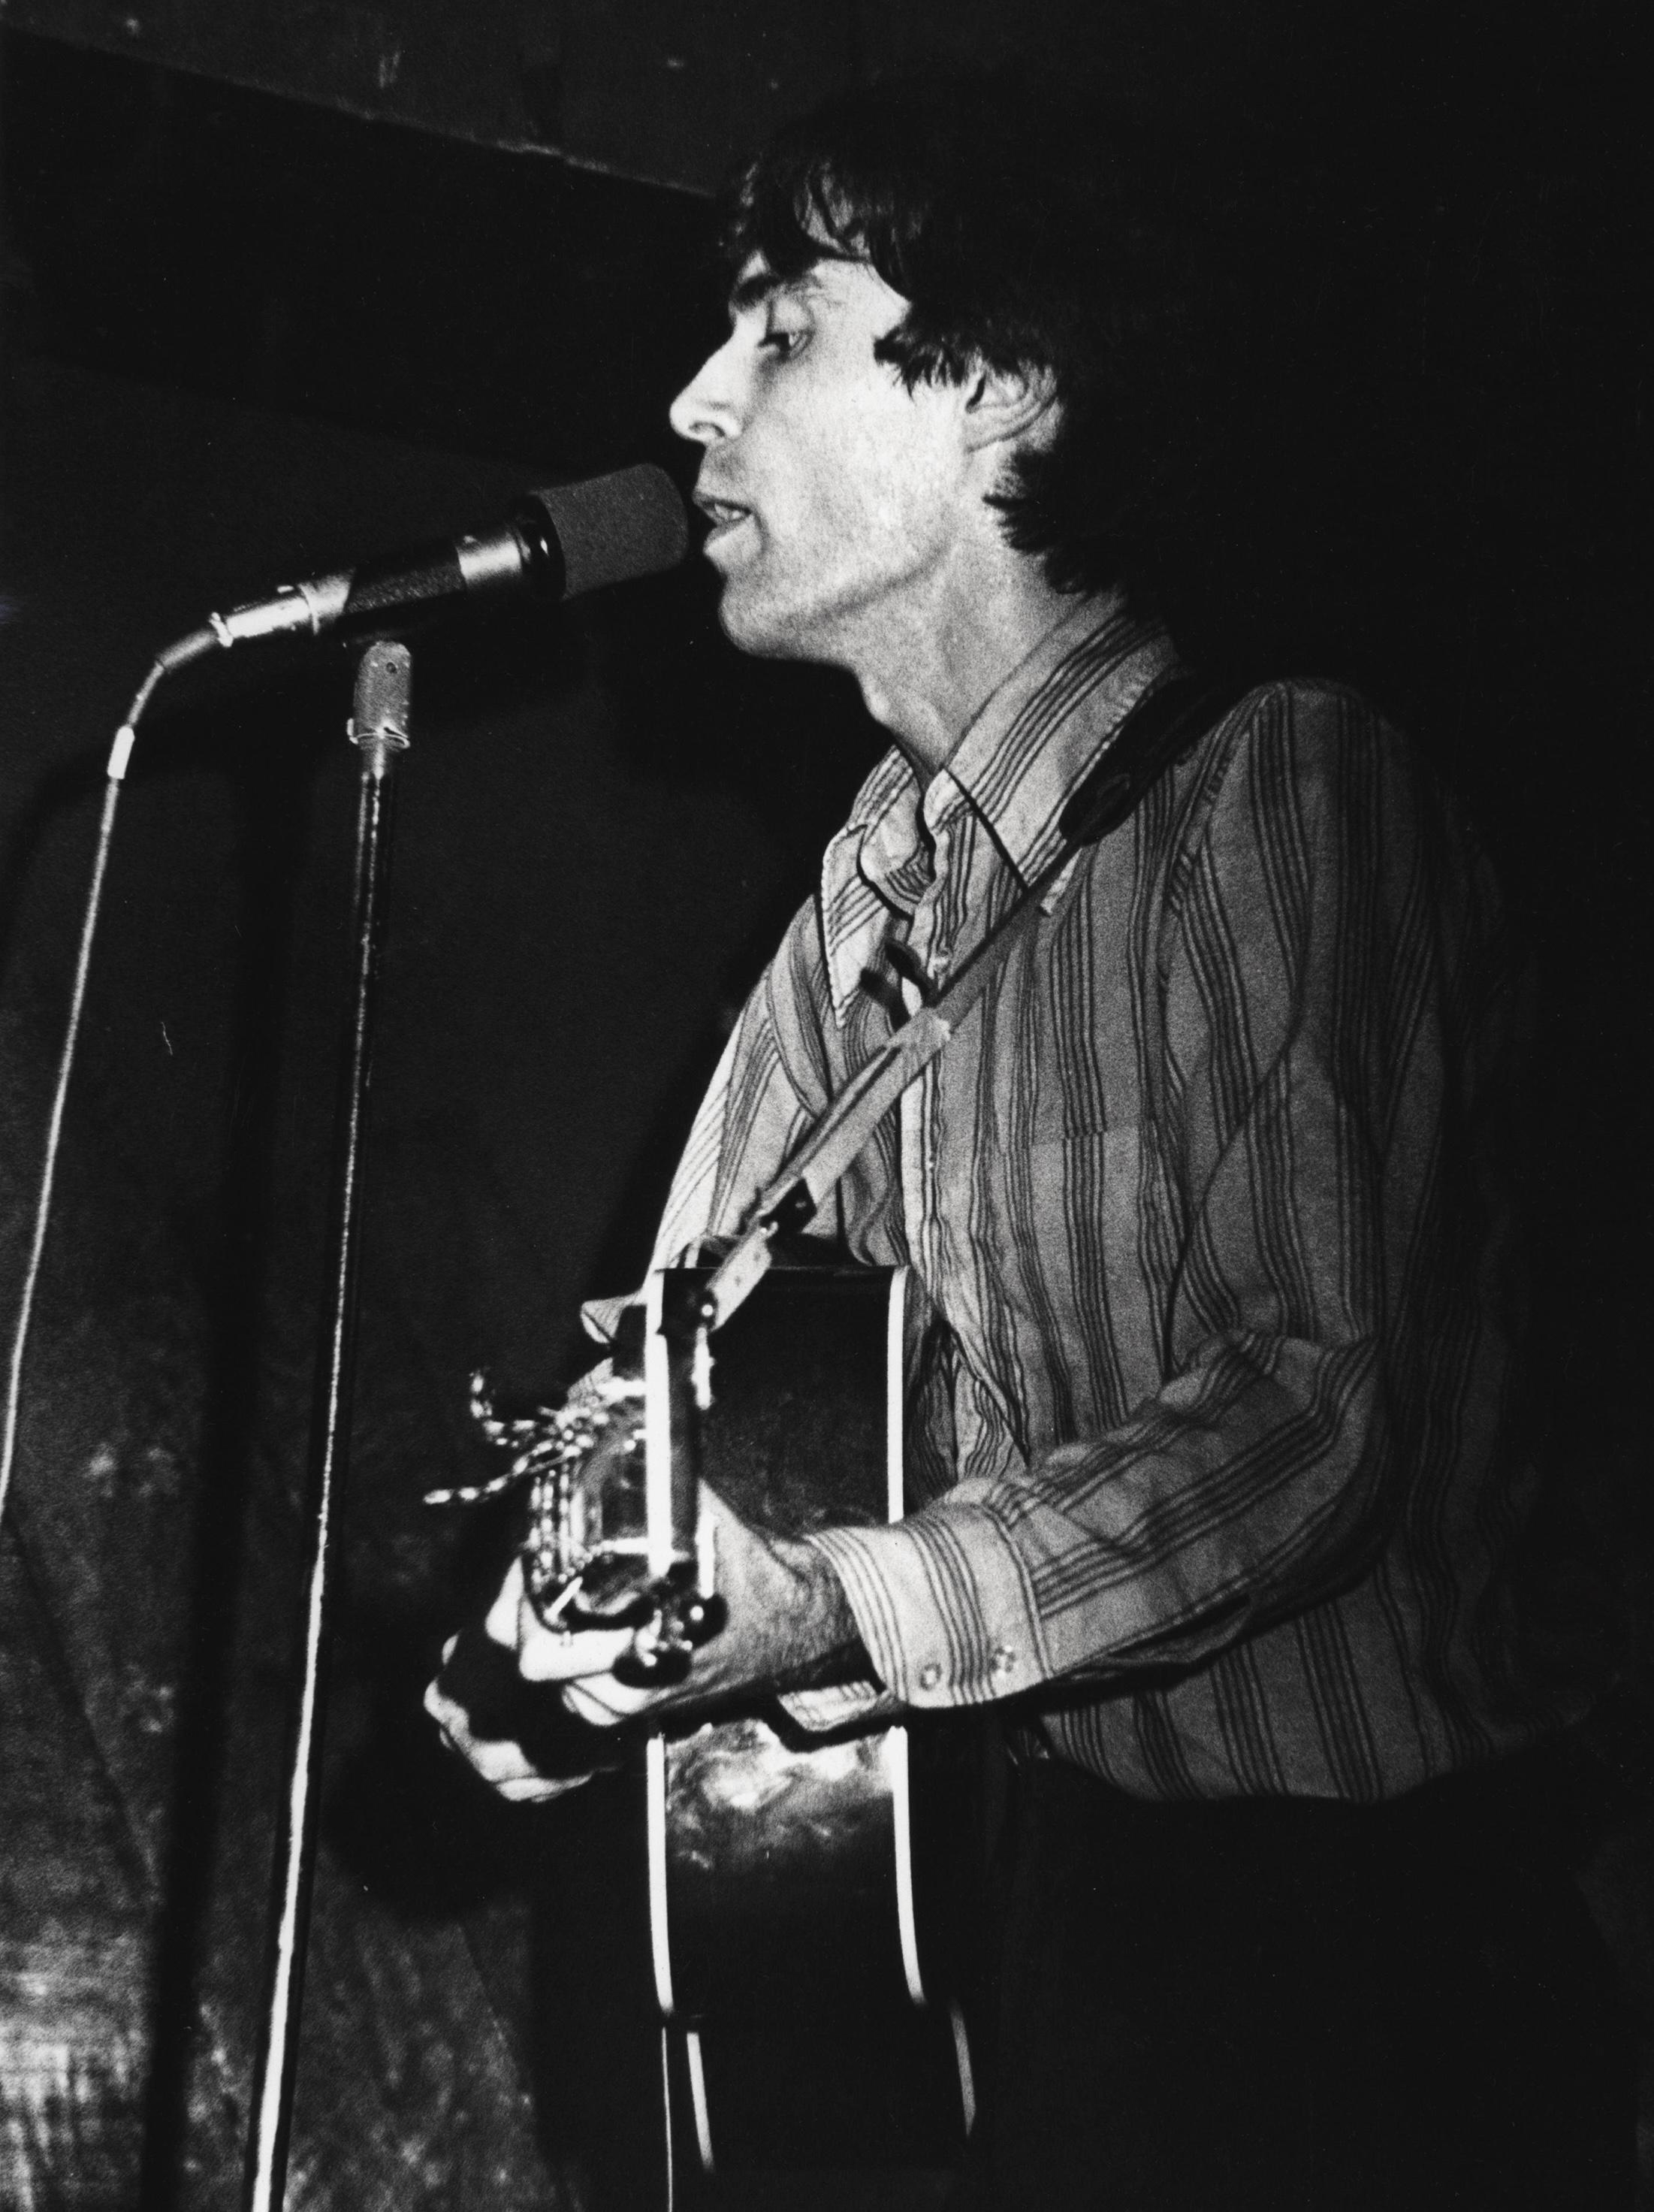 David Byrne Talking Heads photographie CBGB 1977 par Fernando Natalici :

Support : Épreuve à la gélatine d'argent. 1977.
11 x 14 pouces.
Bon état général du Vintage ; signes mineurs de manipulation ; bien conservé.
Signé à la main au verso d'une